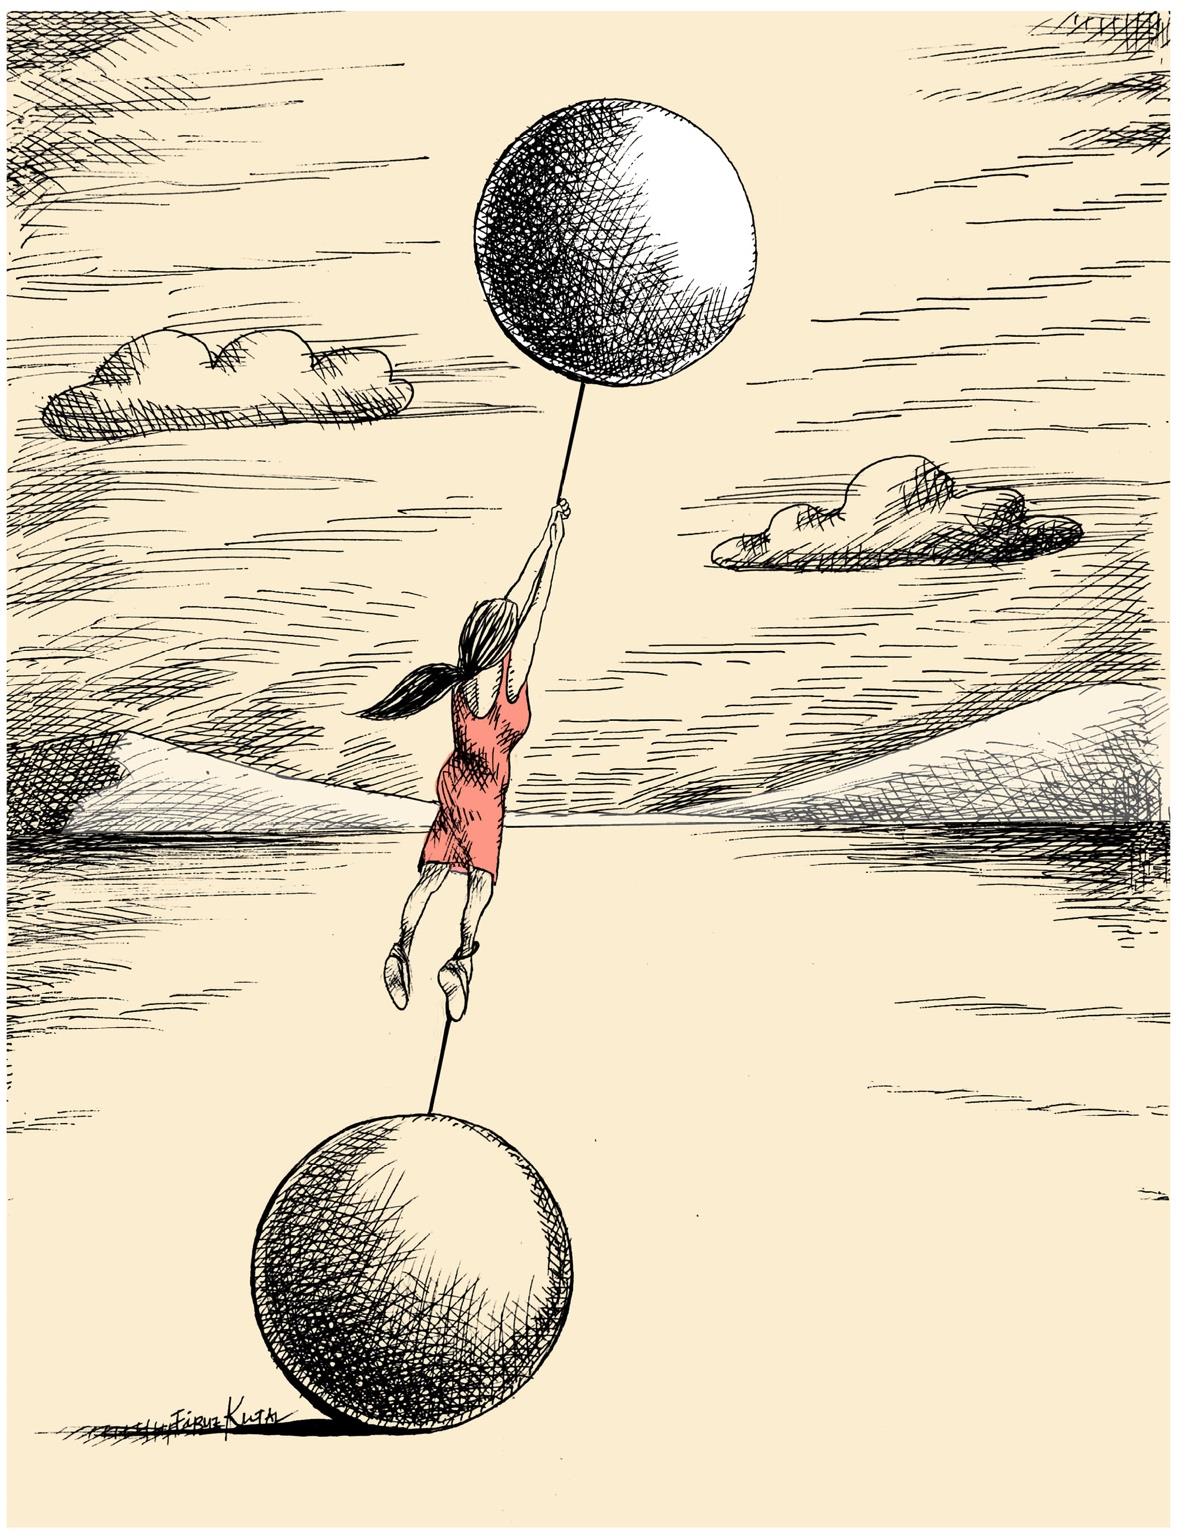 Illustrasjon av Firuz Kutal av en jente som vil fly til værs med en hvit ballong, men holdes fast av en sort kule hun er lenket til.